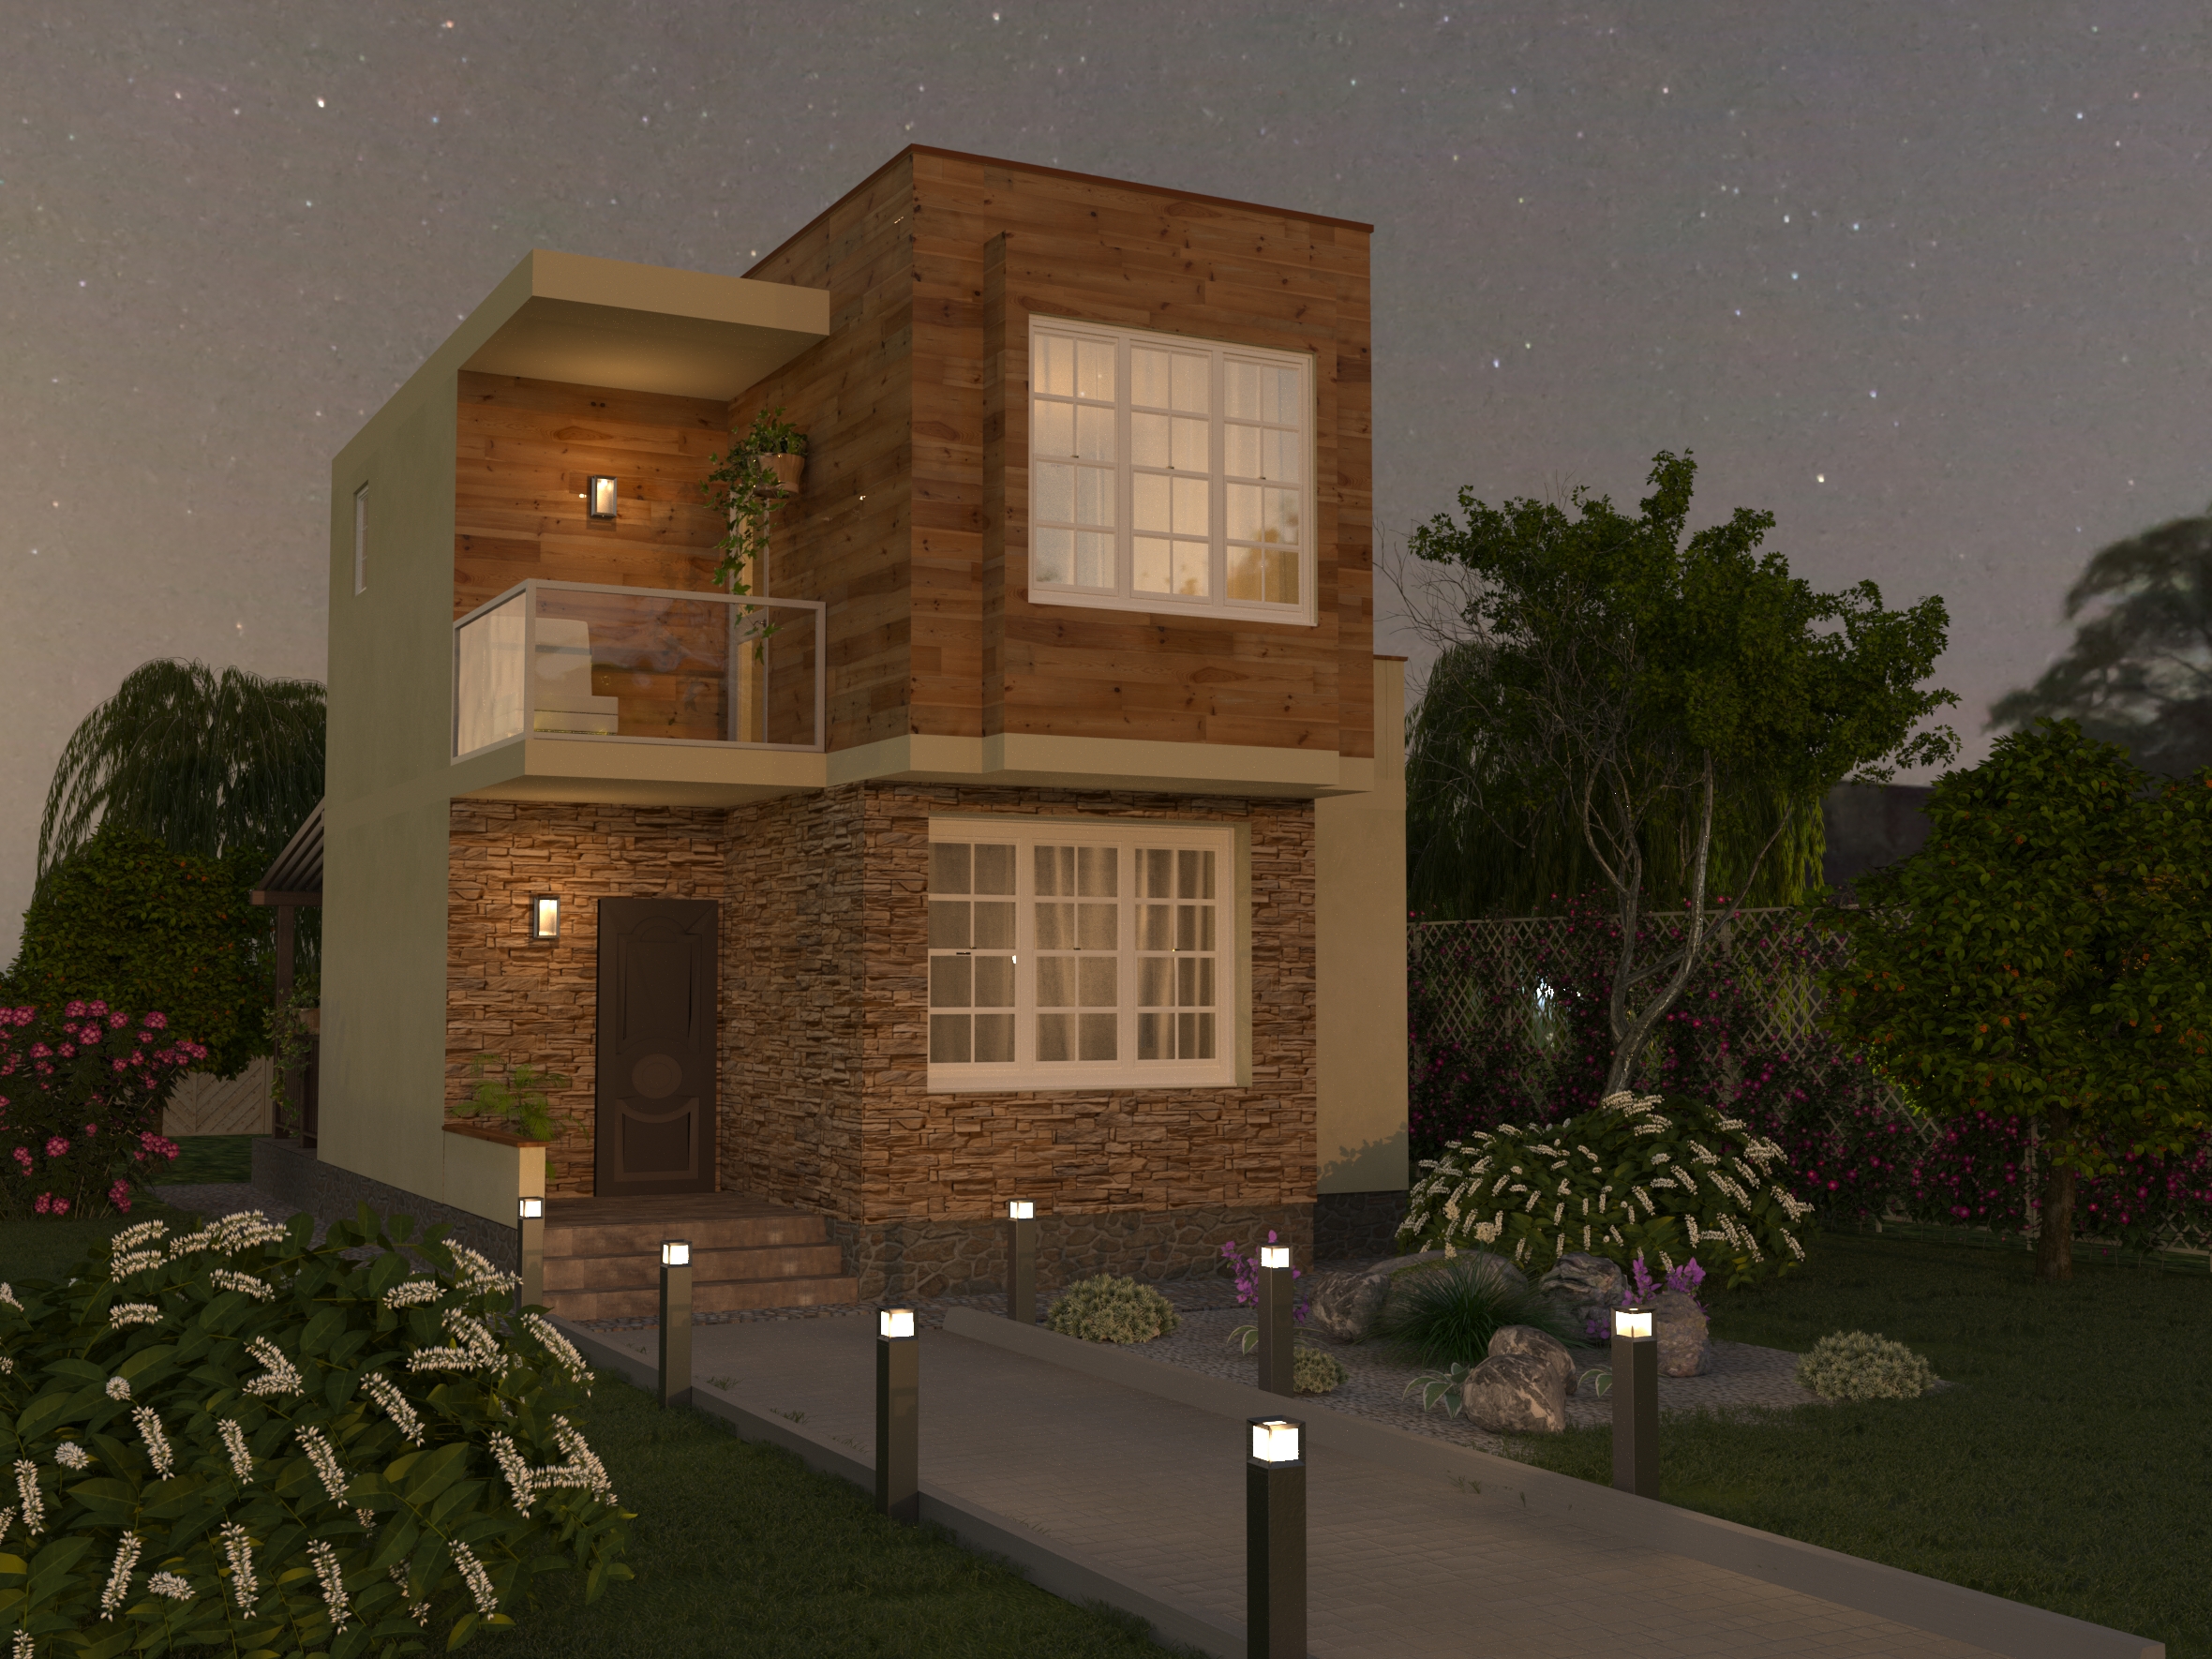 Двухэтажный дом 6,5х7,5м в 3d max corona render изображение